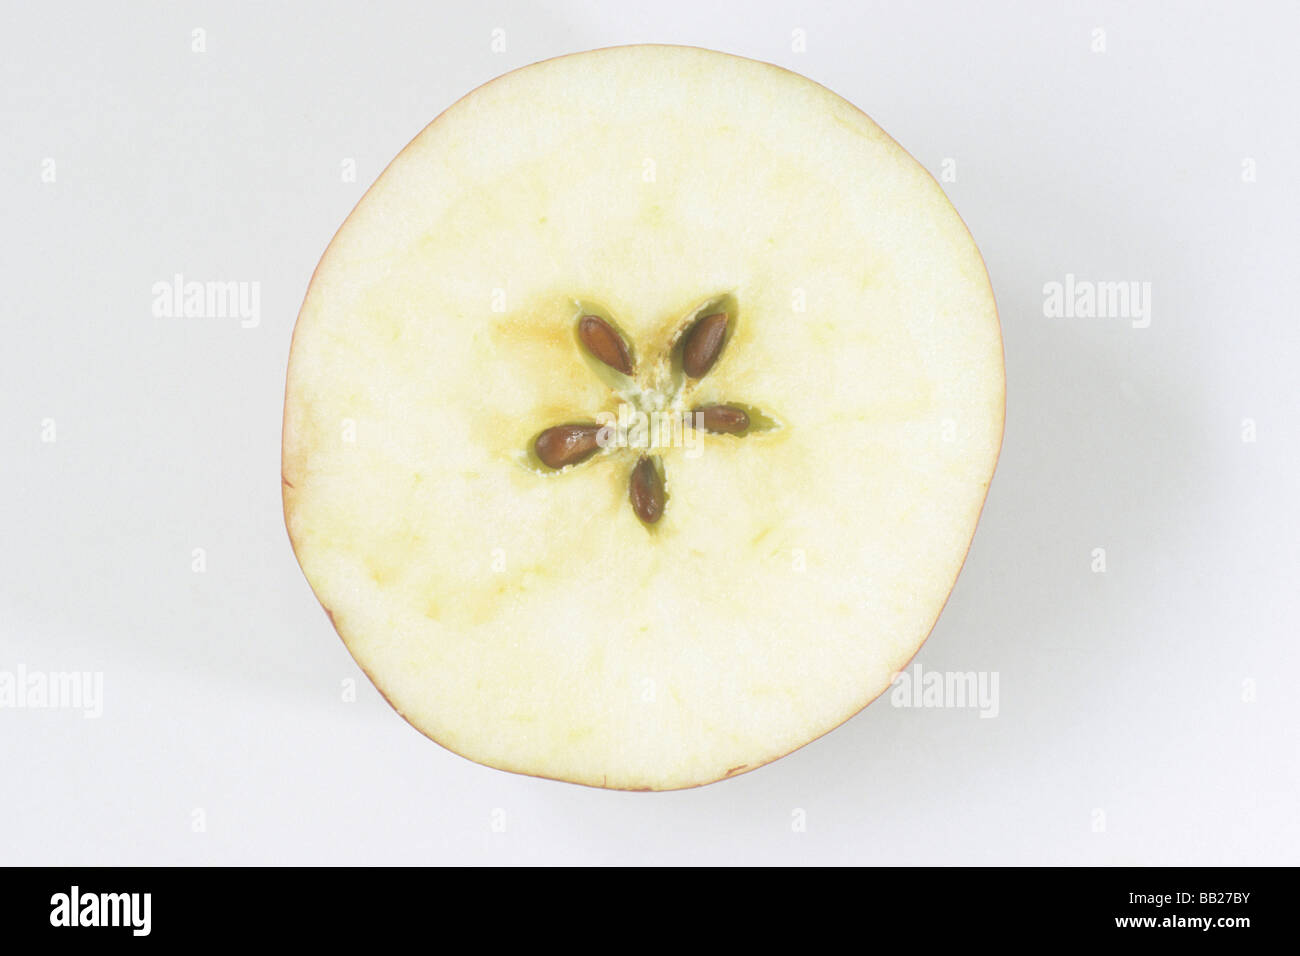 Domestic Apple (Malus domestica), cross-section of ripe fruit, studio picture Stock Photo